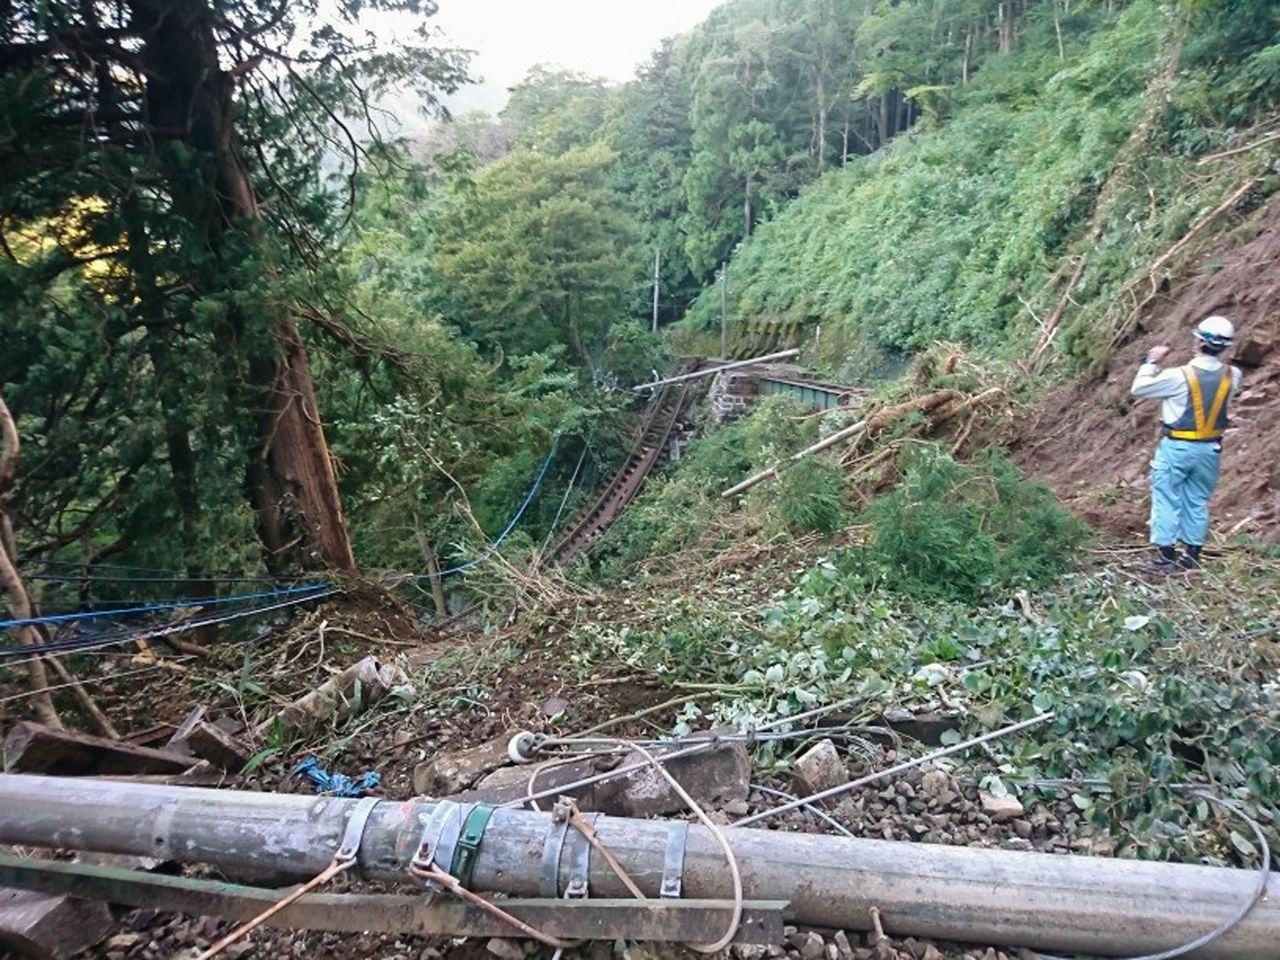 جرفت الانهيارات الأرضية جزءا كبير من السكة الحديدية الممتدة بين محطتي مييانوشيتا وكواكيداني كما هو موضح في هذه الصورة الملتقطة في 13 أكتوبر/تشرين الأول عام 2019 (الصورة بإذن من سكة حديد هاكوني توزان، حقوق الصورة جيجي برس).